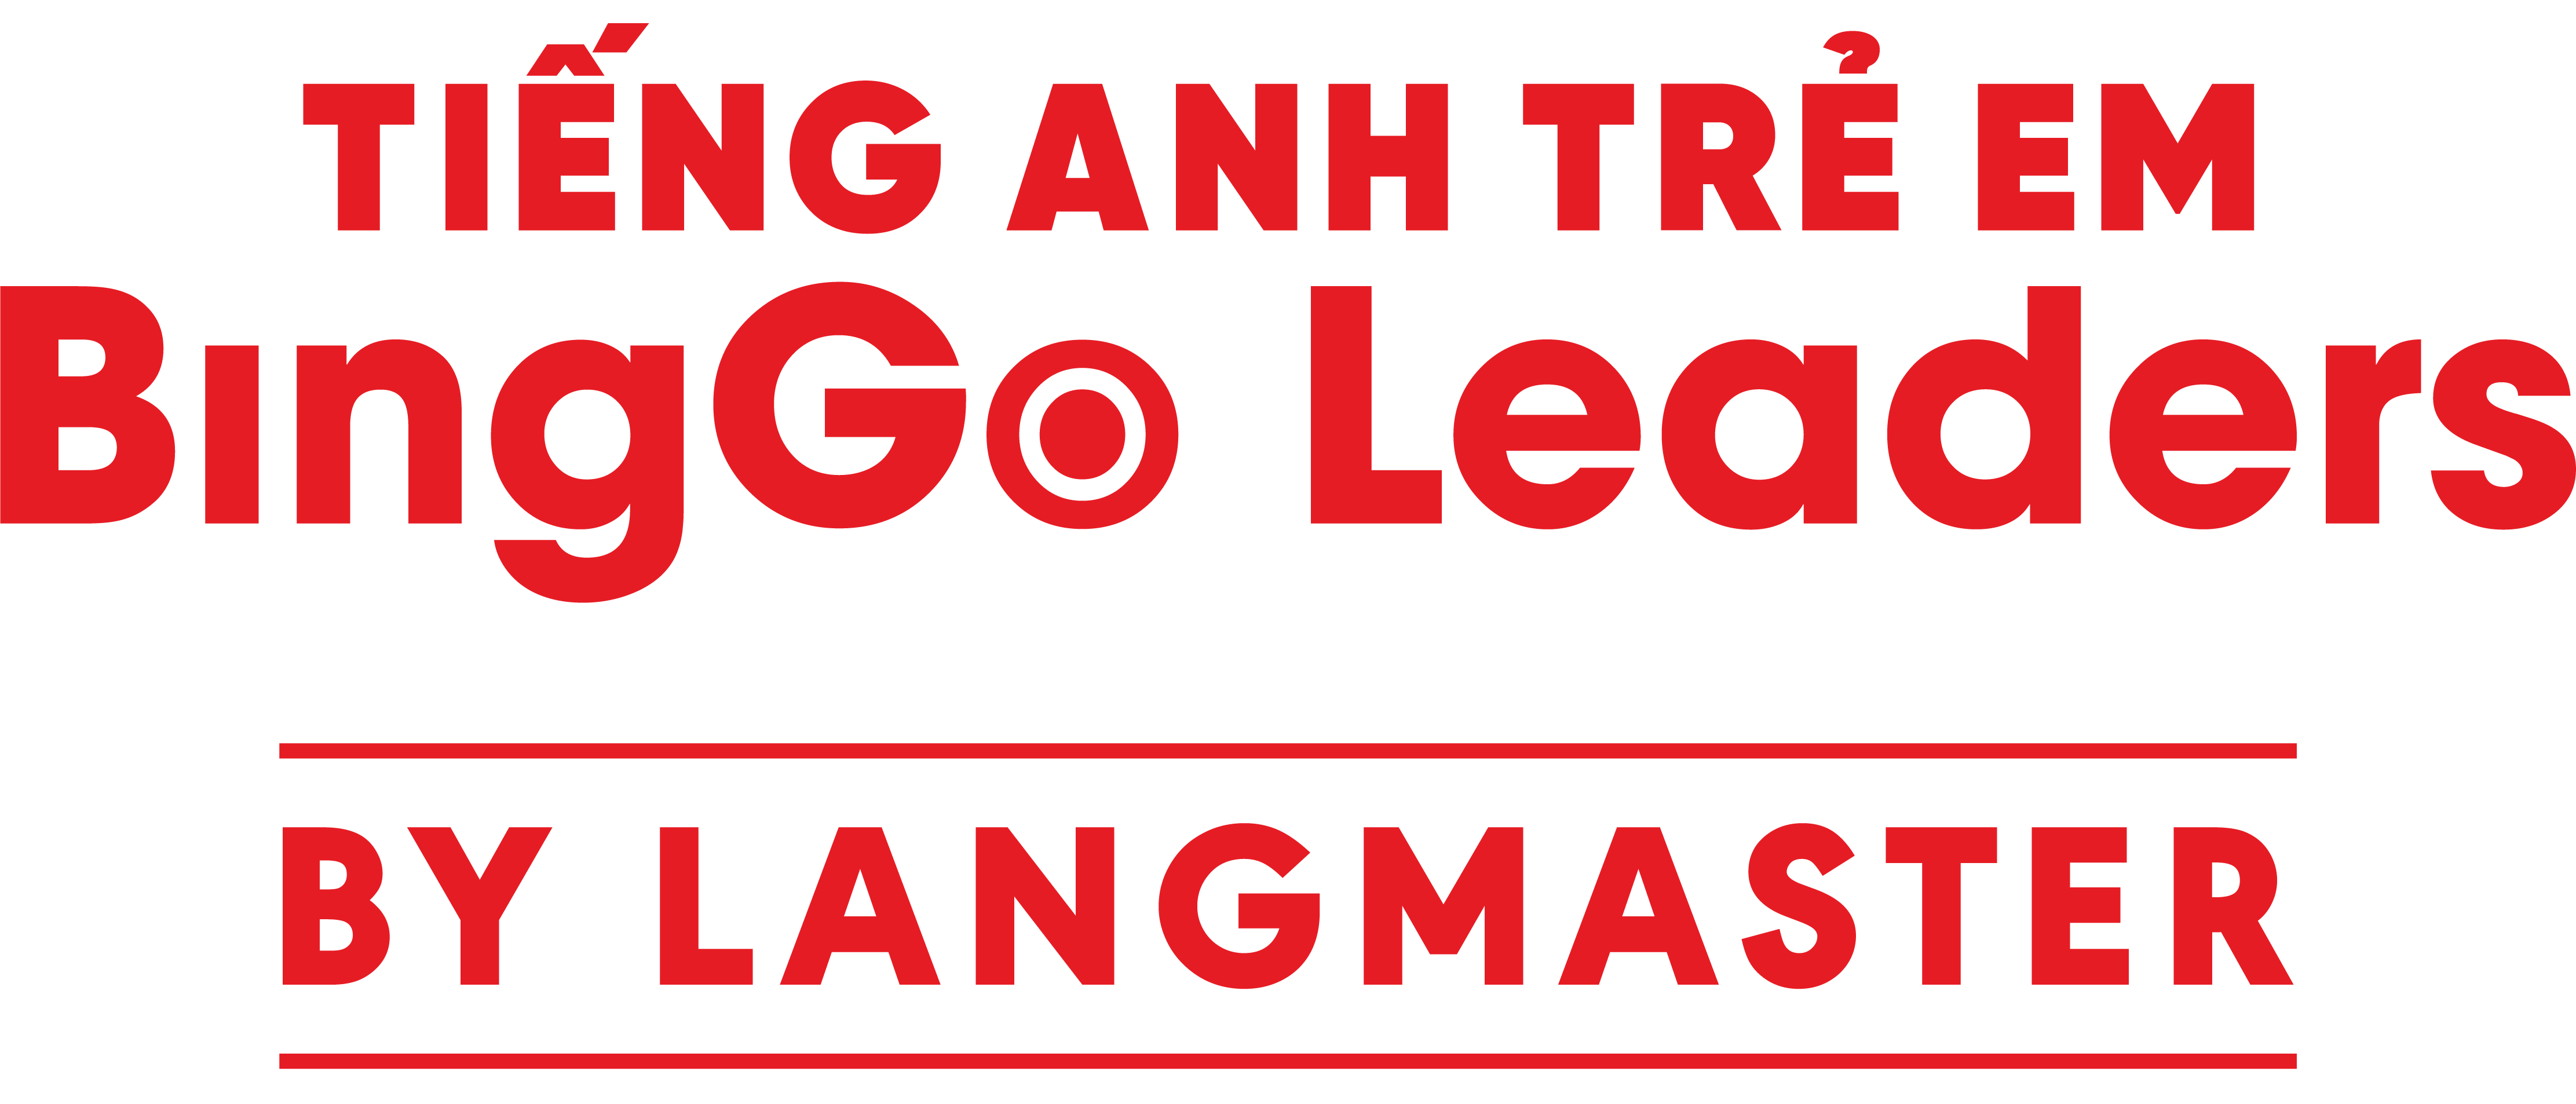 binggo-leaders